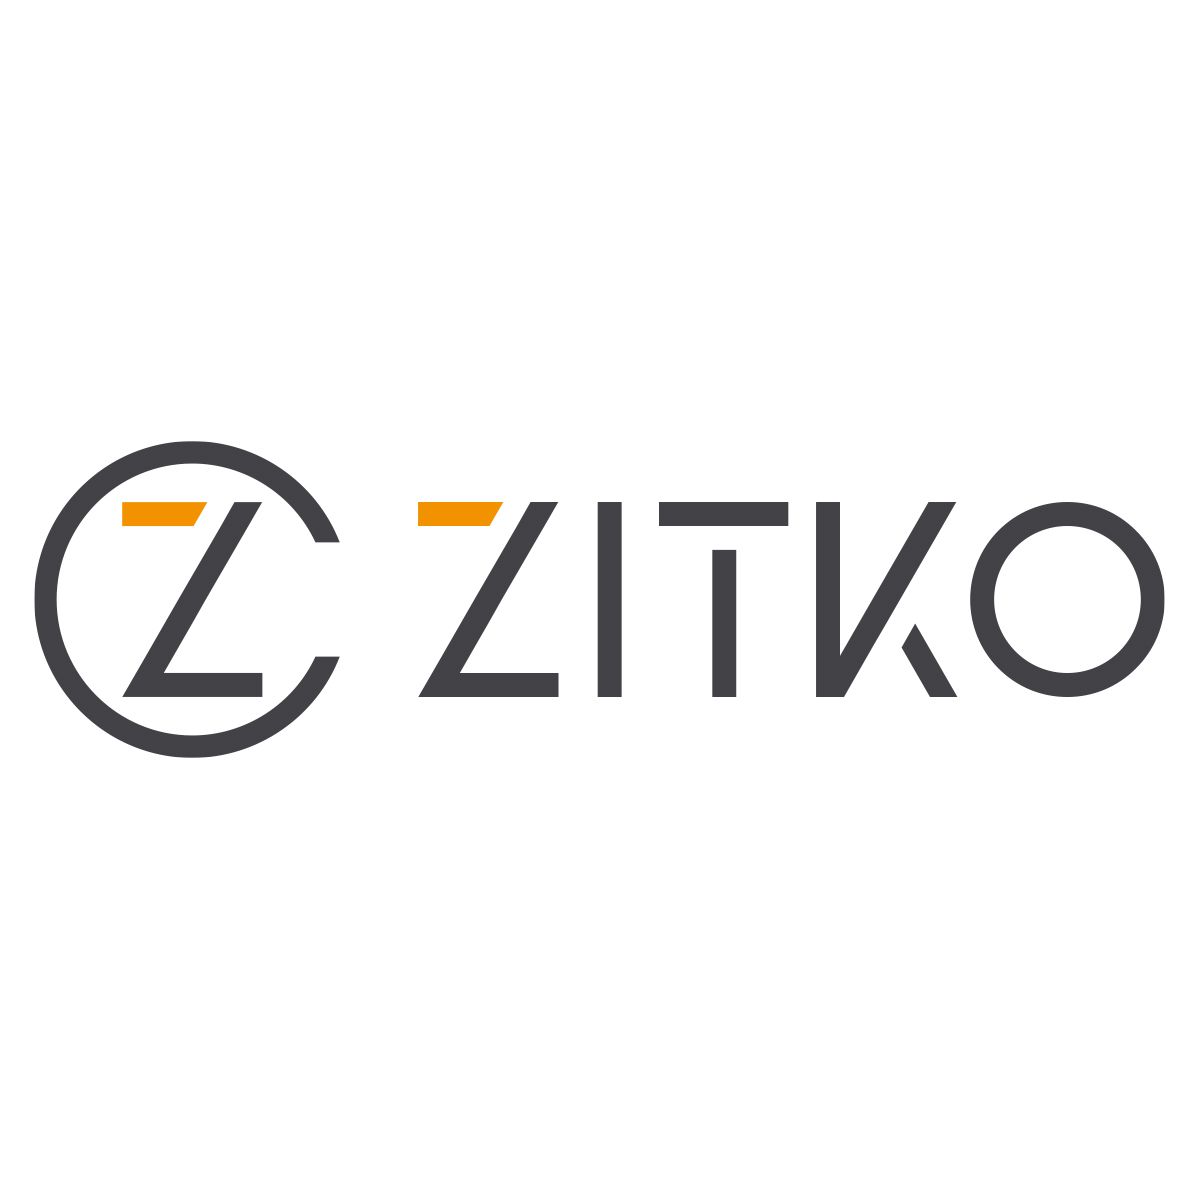 Meet Zitko's Managed Service Team